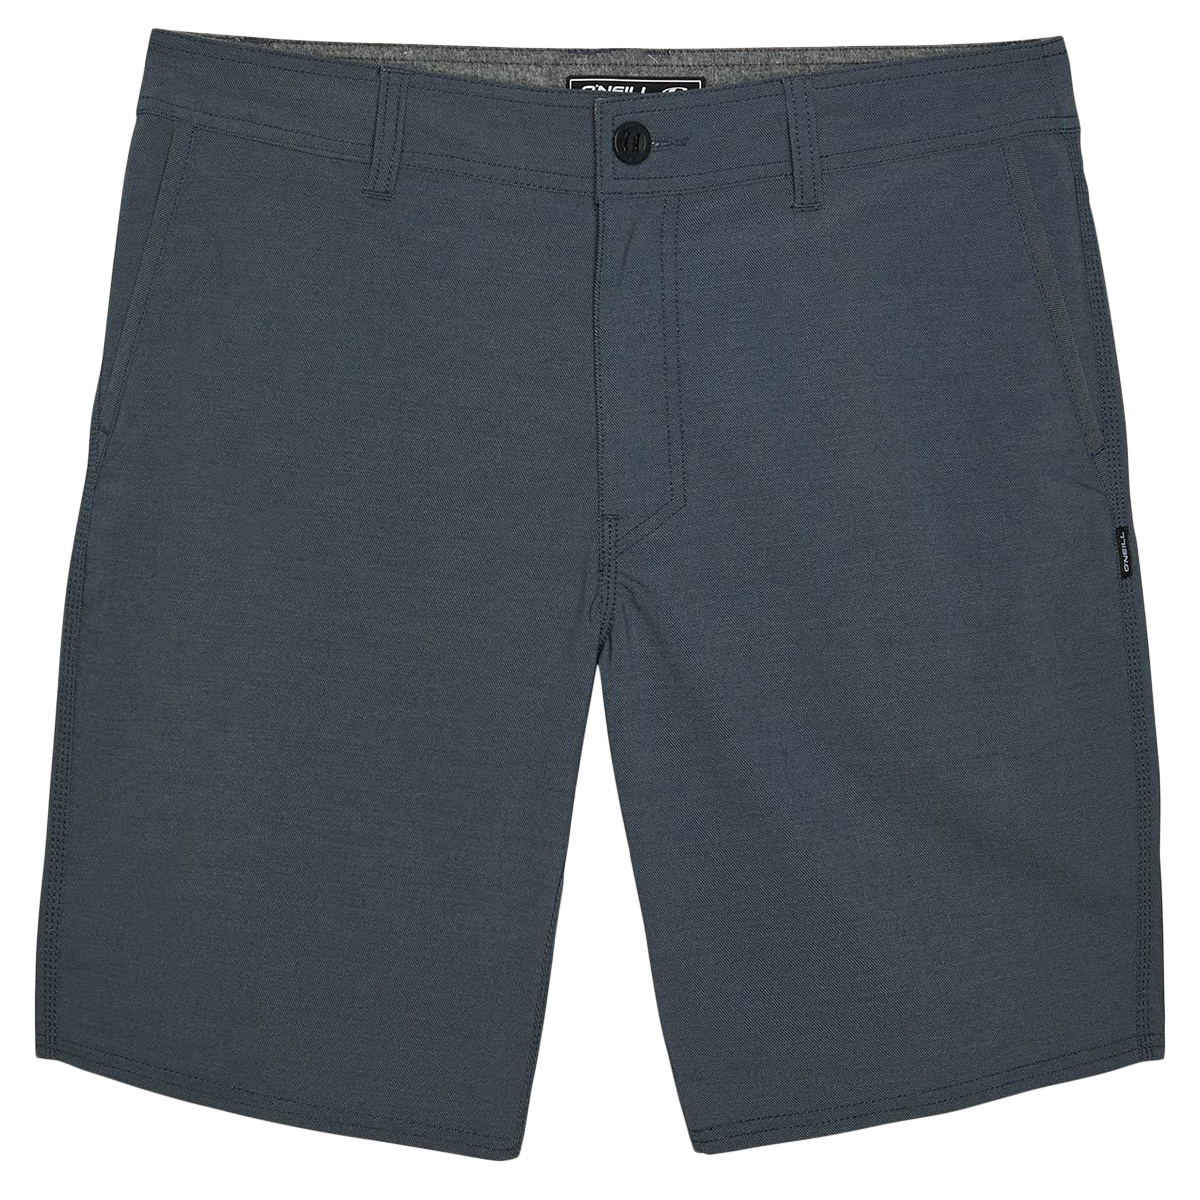 O'neill Men's Stockton Hybrid Shorts - Blue, 32